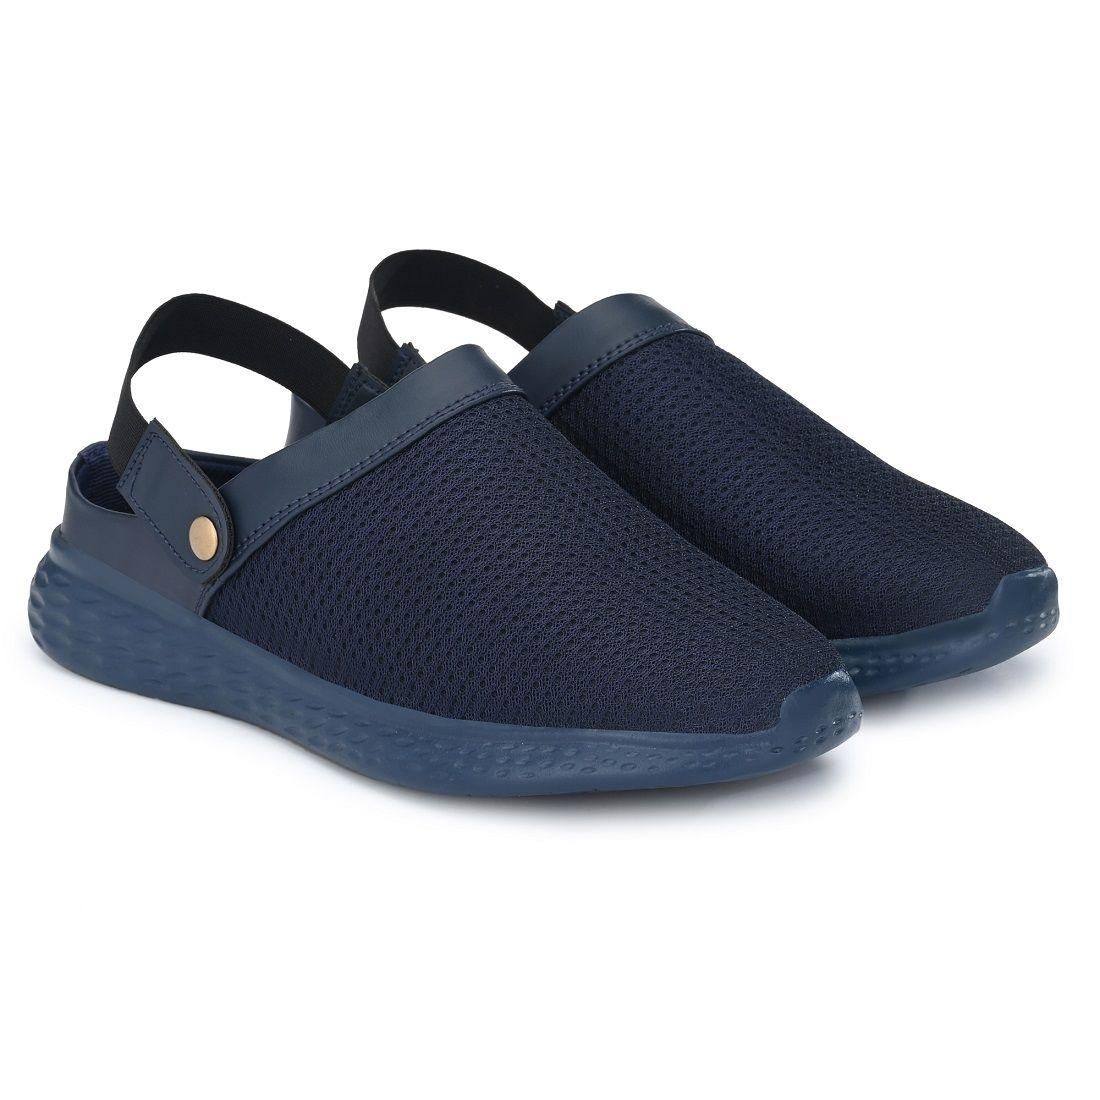 Bucik Blue Mesh Sandal for Men's